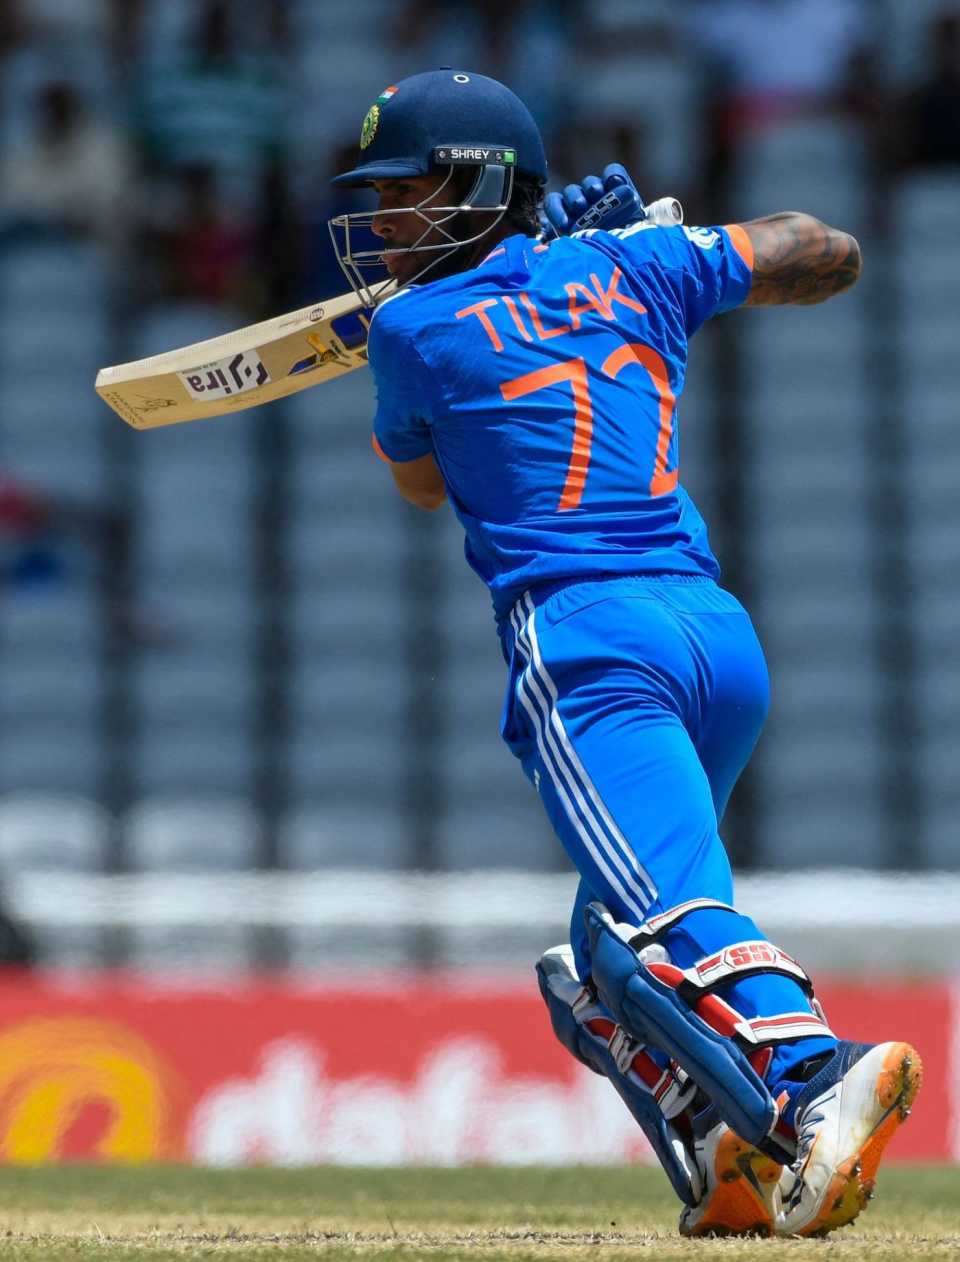 Tilak Varma was impressive in his debut international innings